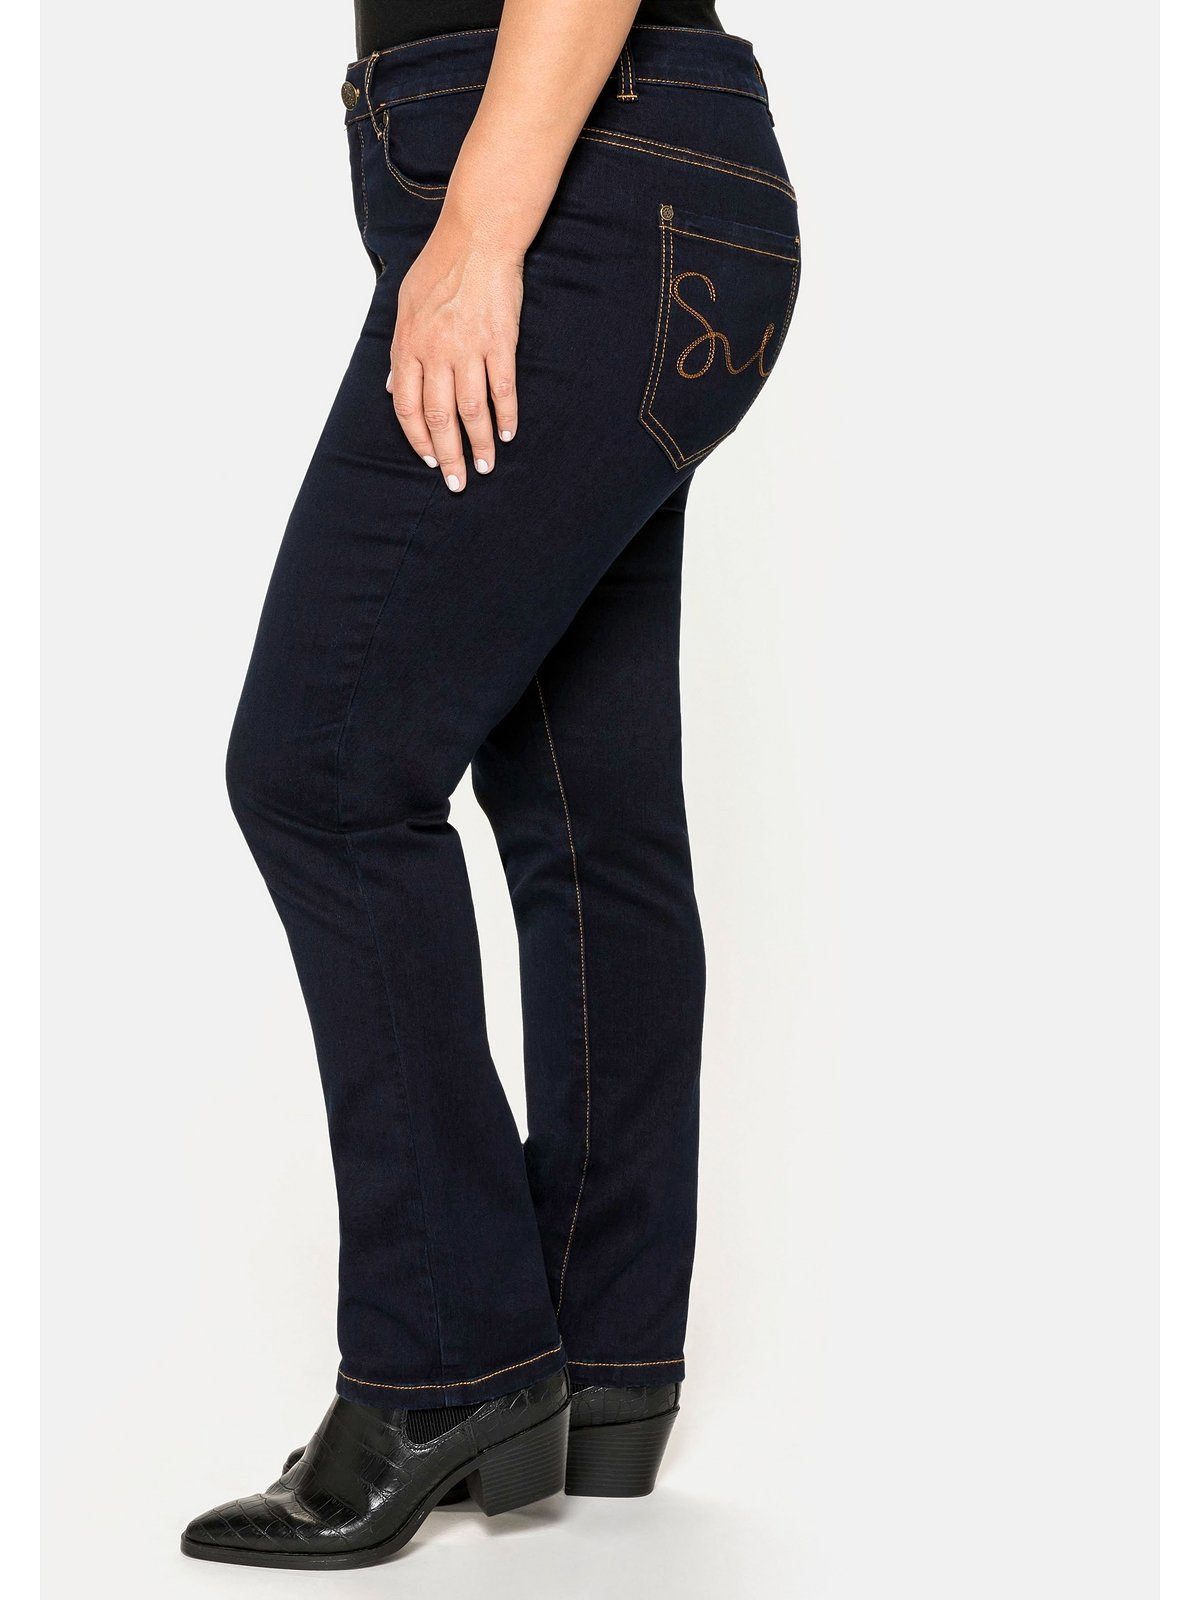 Sheego Stretch-Jeans Große Größen 5-Pocket-Stil Denim black blue im